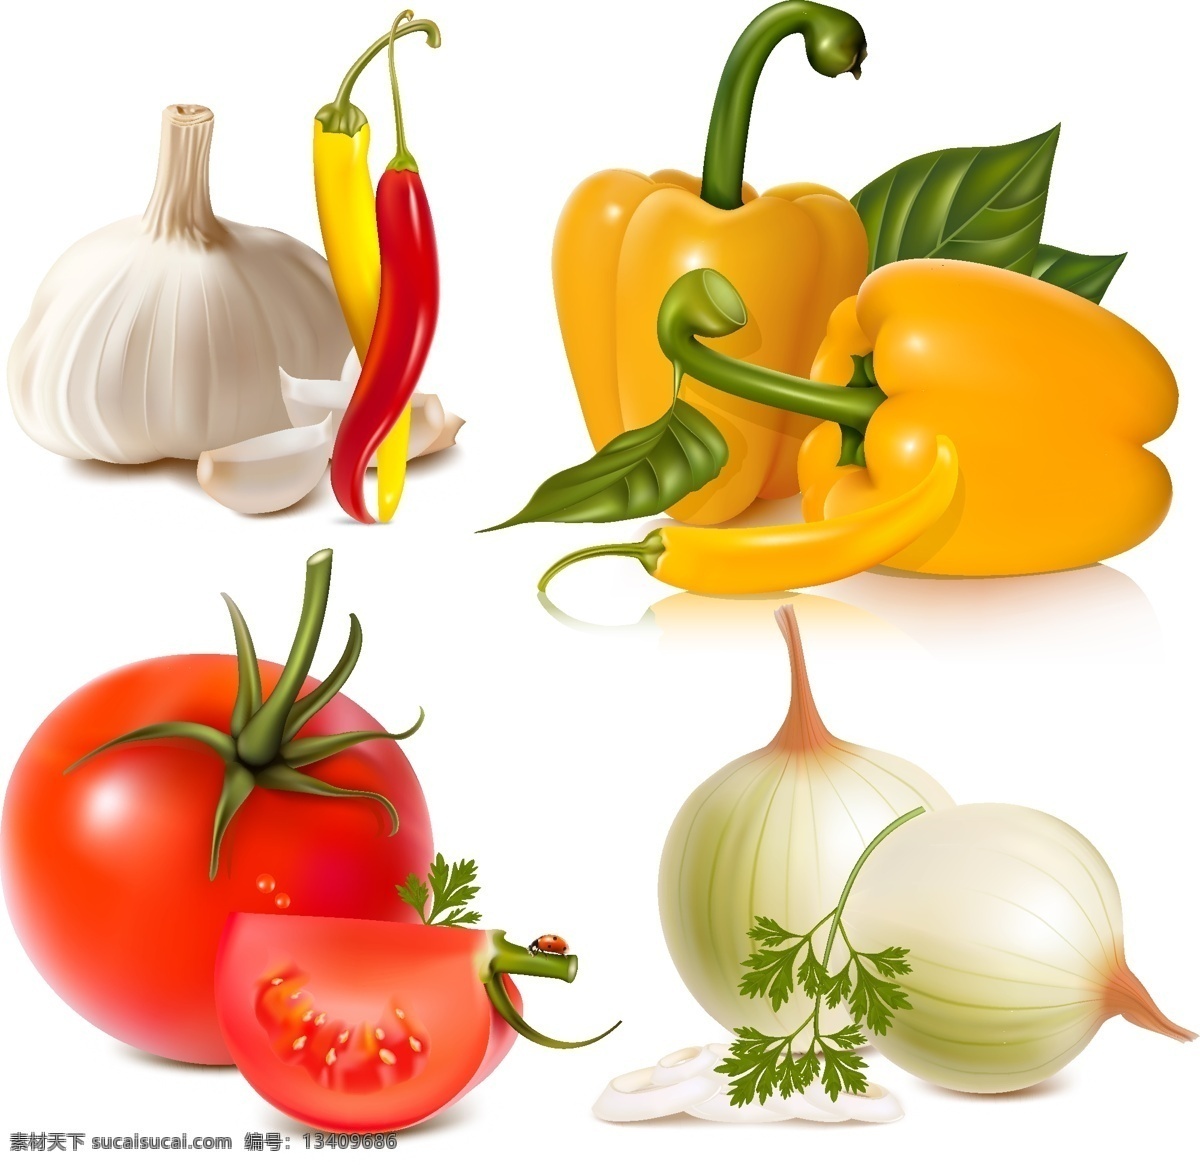 精品 蔬菜 高清 矢量图 番茄 大蒜 辣椒 葱 蔬菜矢量 黄辣椒 蔬菜下载 蔬菜水果 生物世界